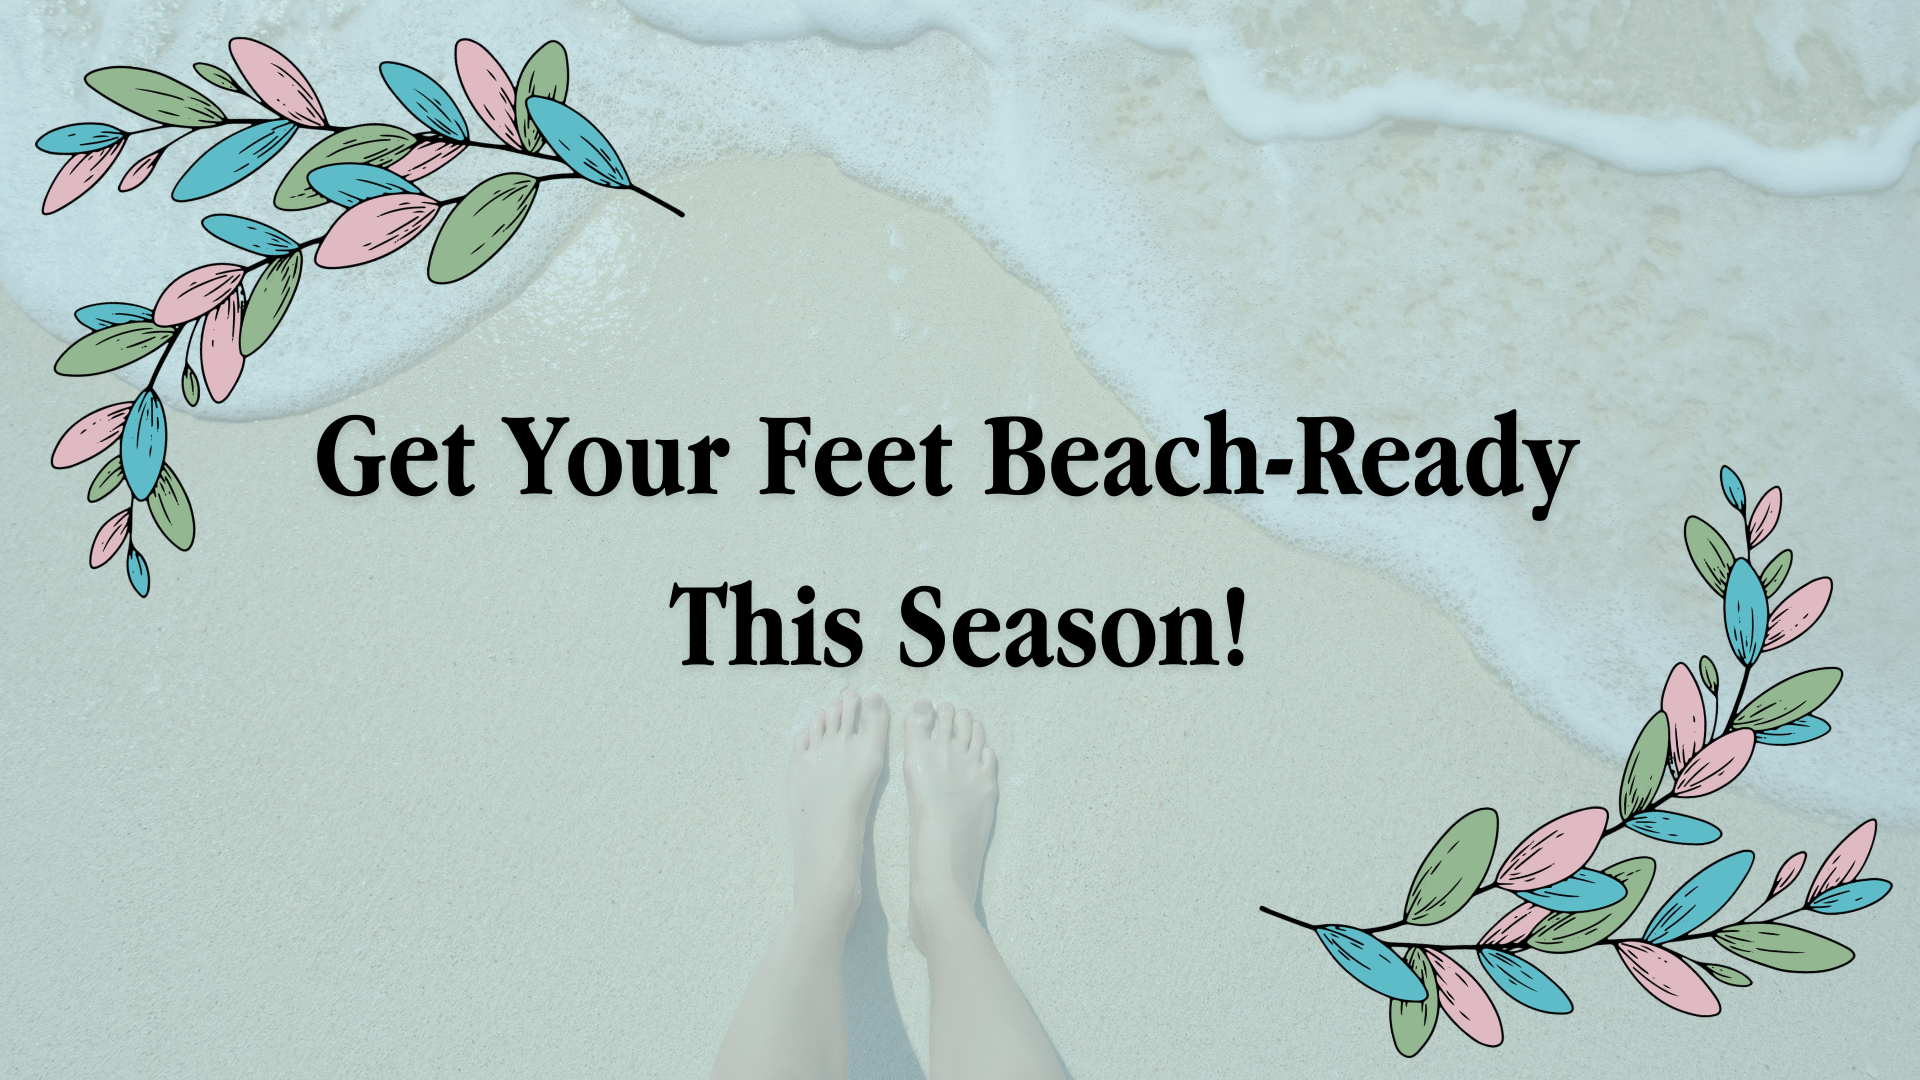 Get Your Feet Beach-Ready This Season!